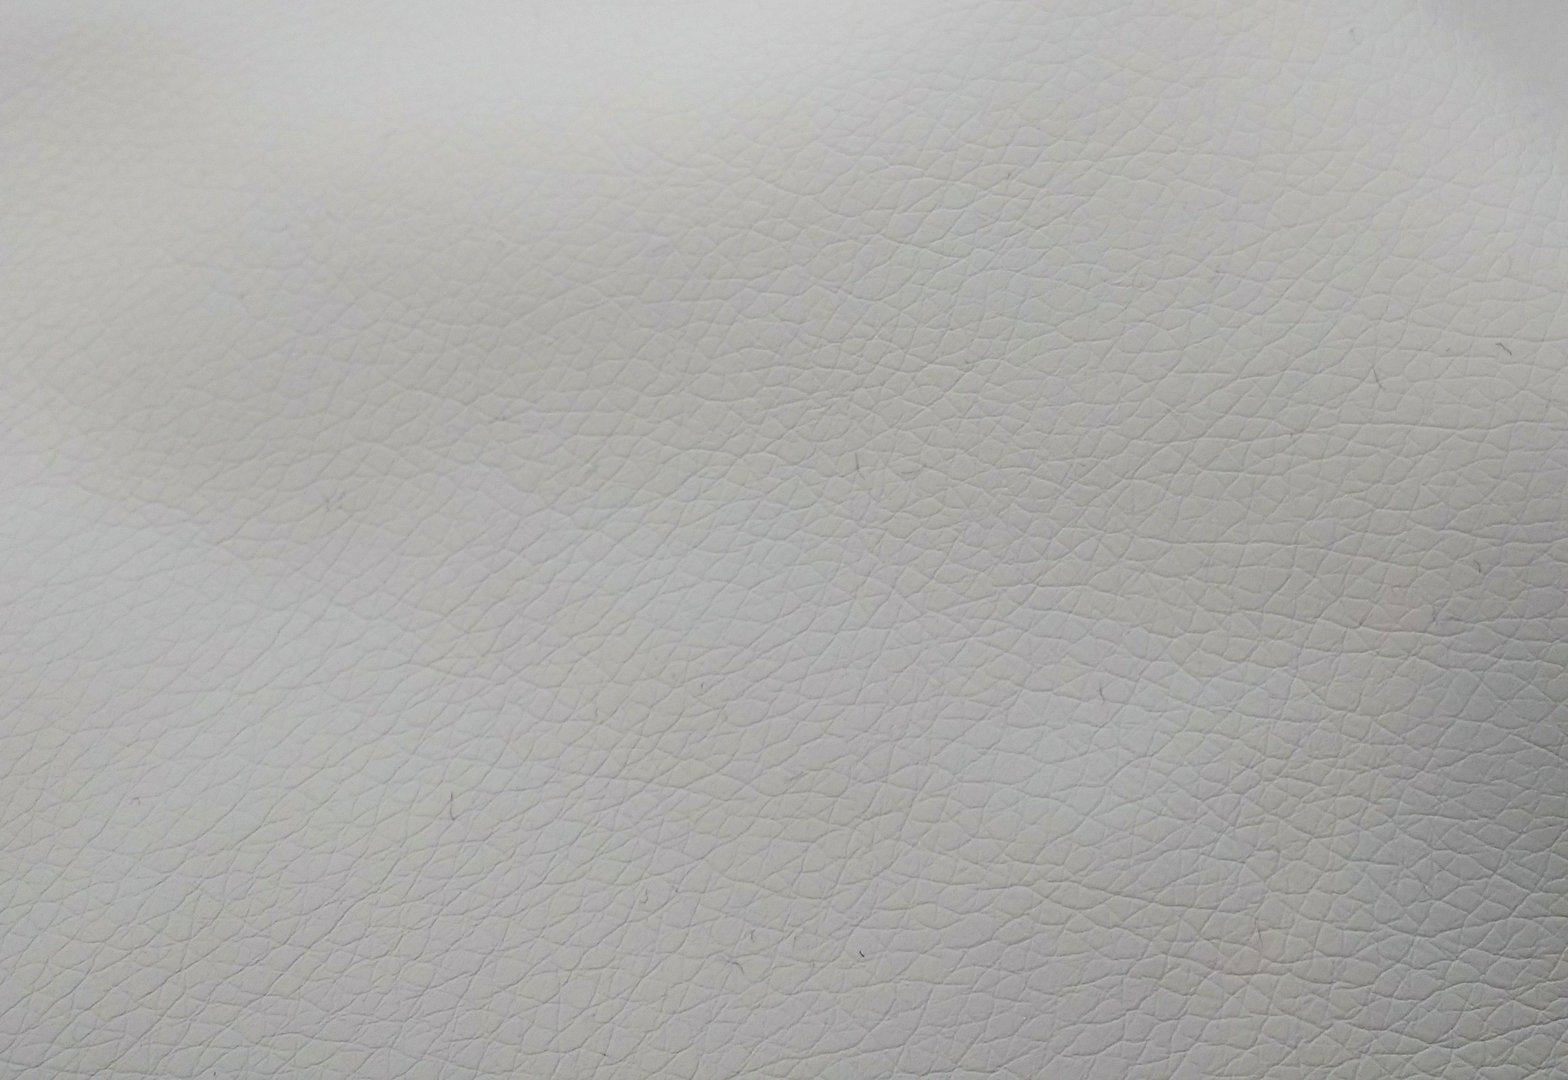 White faux leather Ekokuir